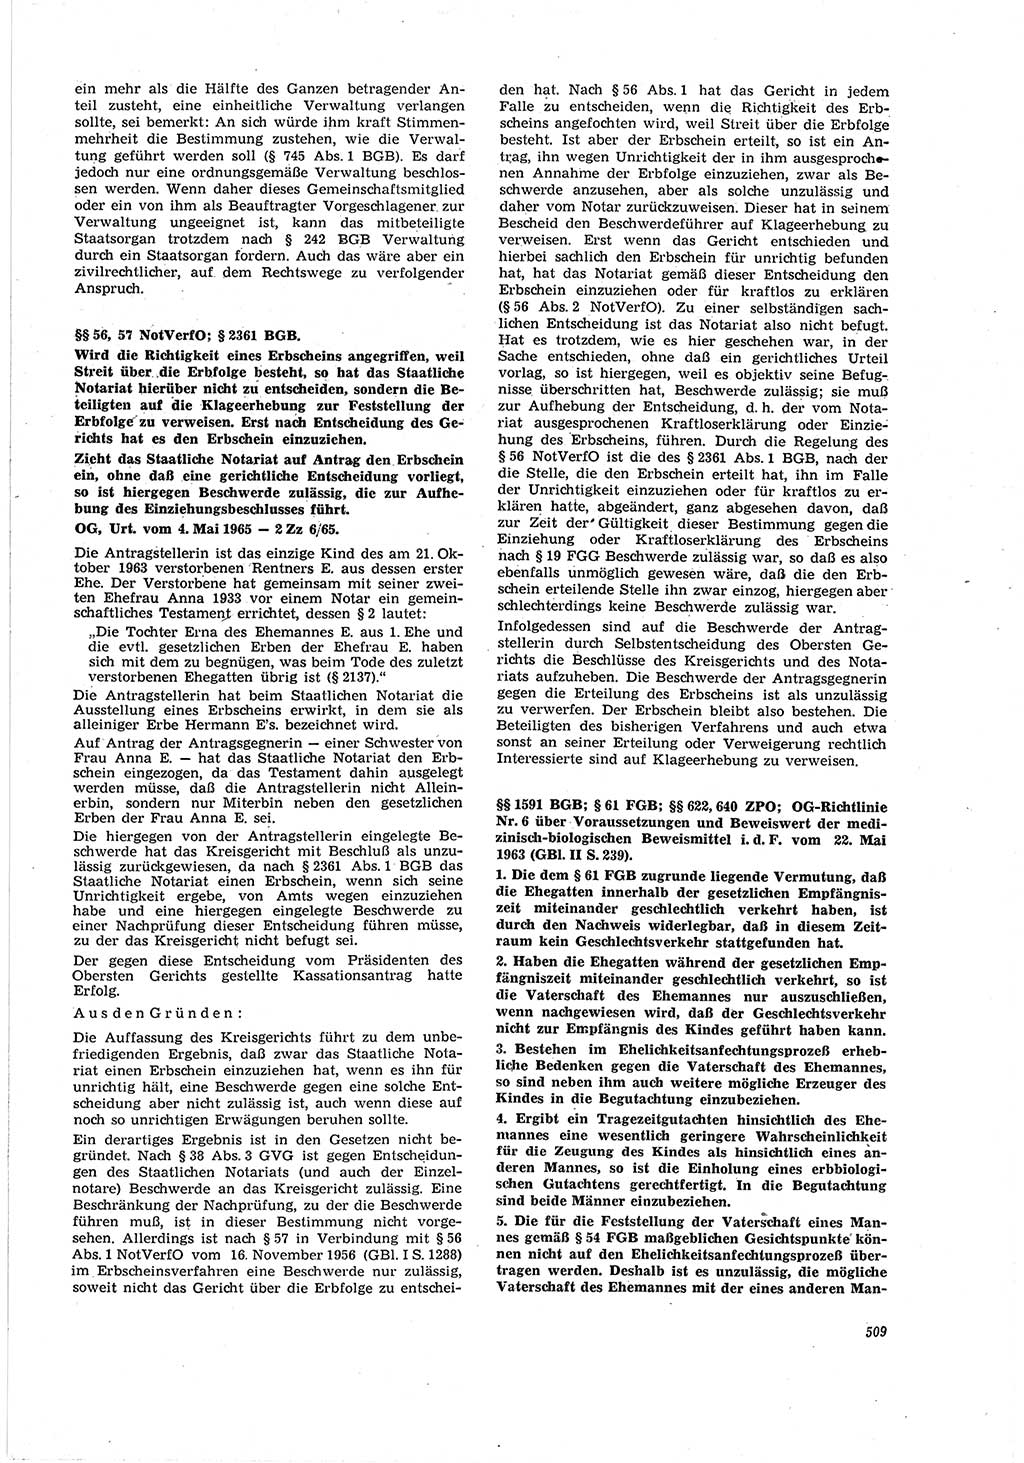 Neue Justiz (NJ), Zeitschrift für Recht und Rechtswissenschaft [Deutsche Demokratische Republik (DDR)], 20. Jahrgang 1966, Seite 509 (NJ DDR 1966, S. 509)